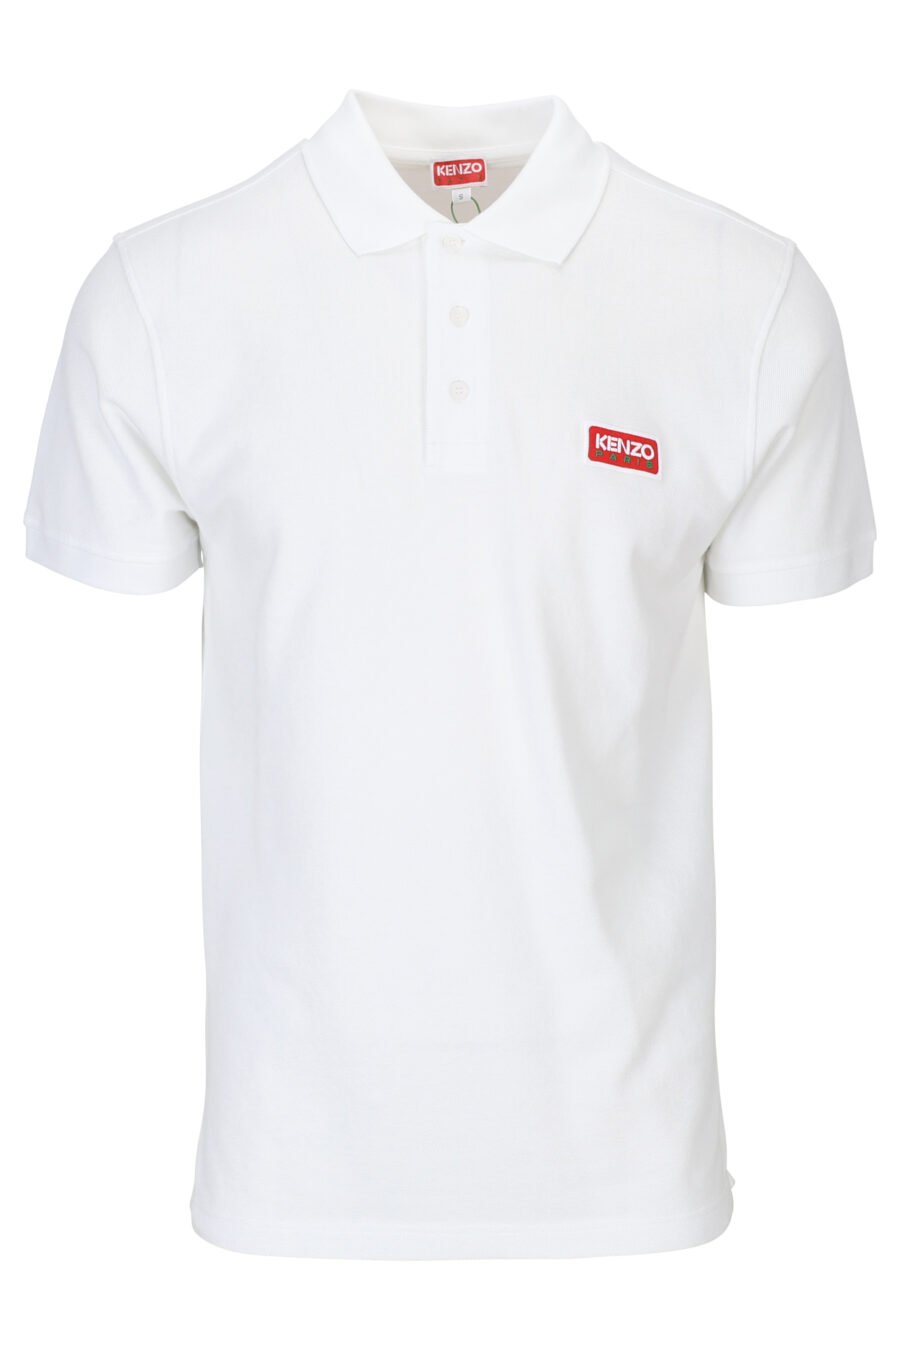 White polo shirt with mini logo "kenzo paris" - 3612230542273